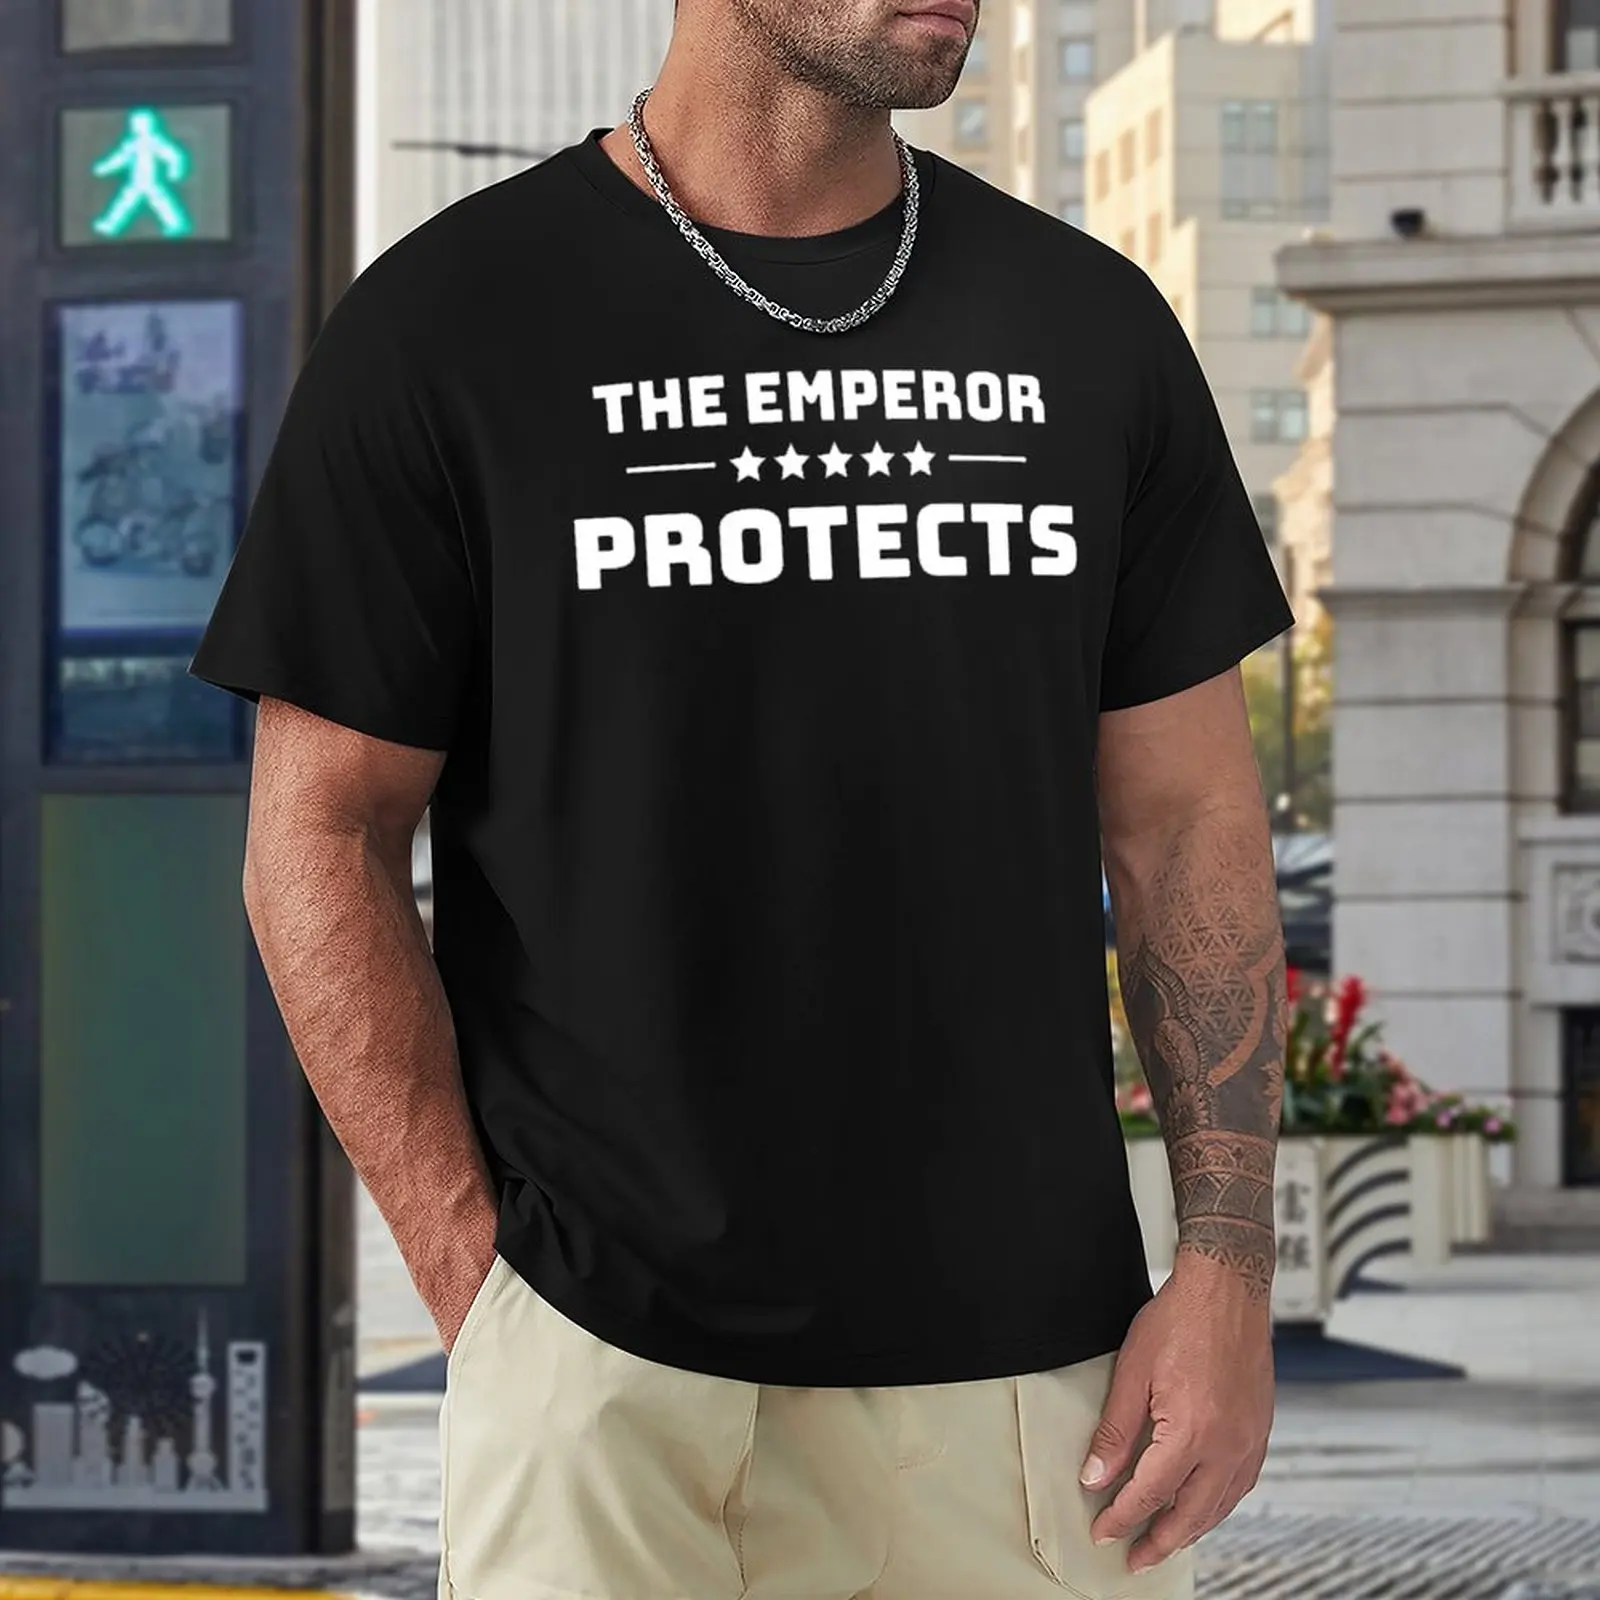 

Лучший продавец Харадзюку, император защищает товары, незаменимая футболка, акция, футболки, новинка, гейки, фитнес, американский размер